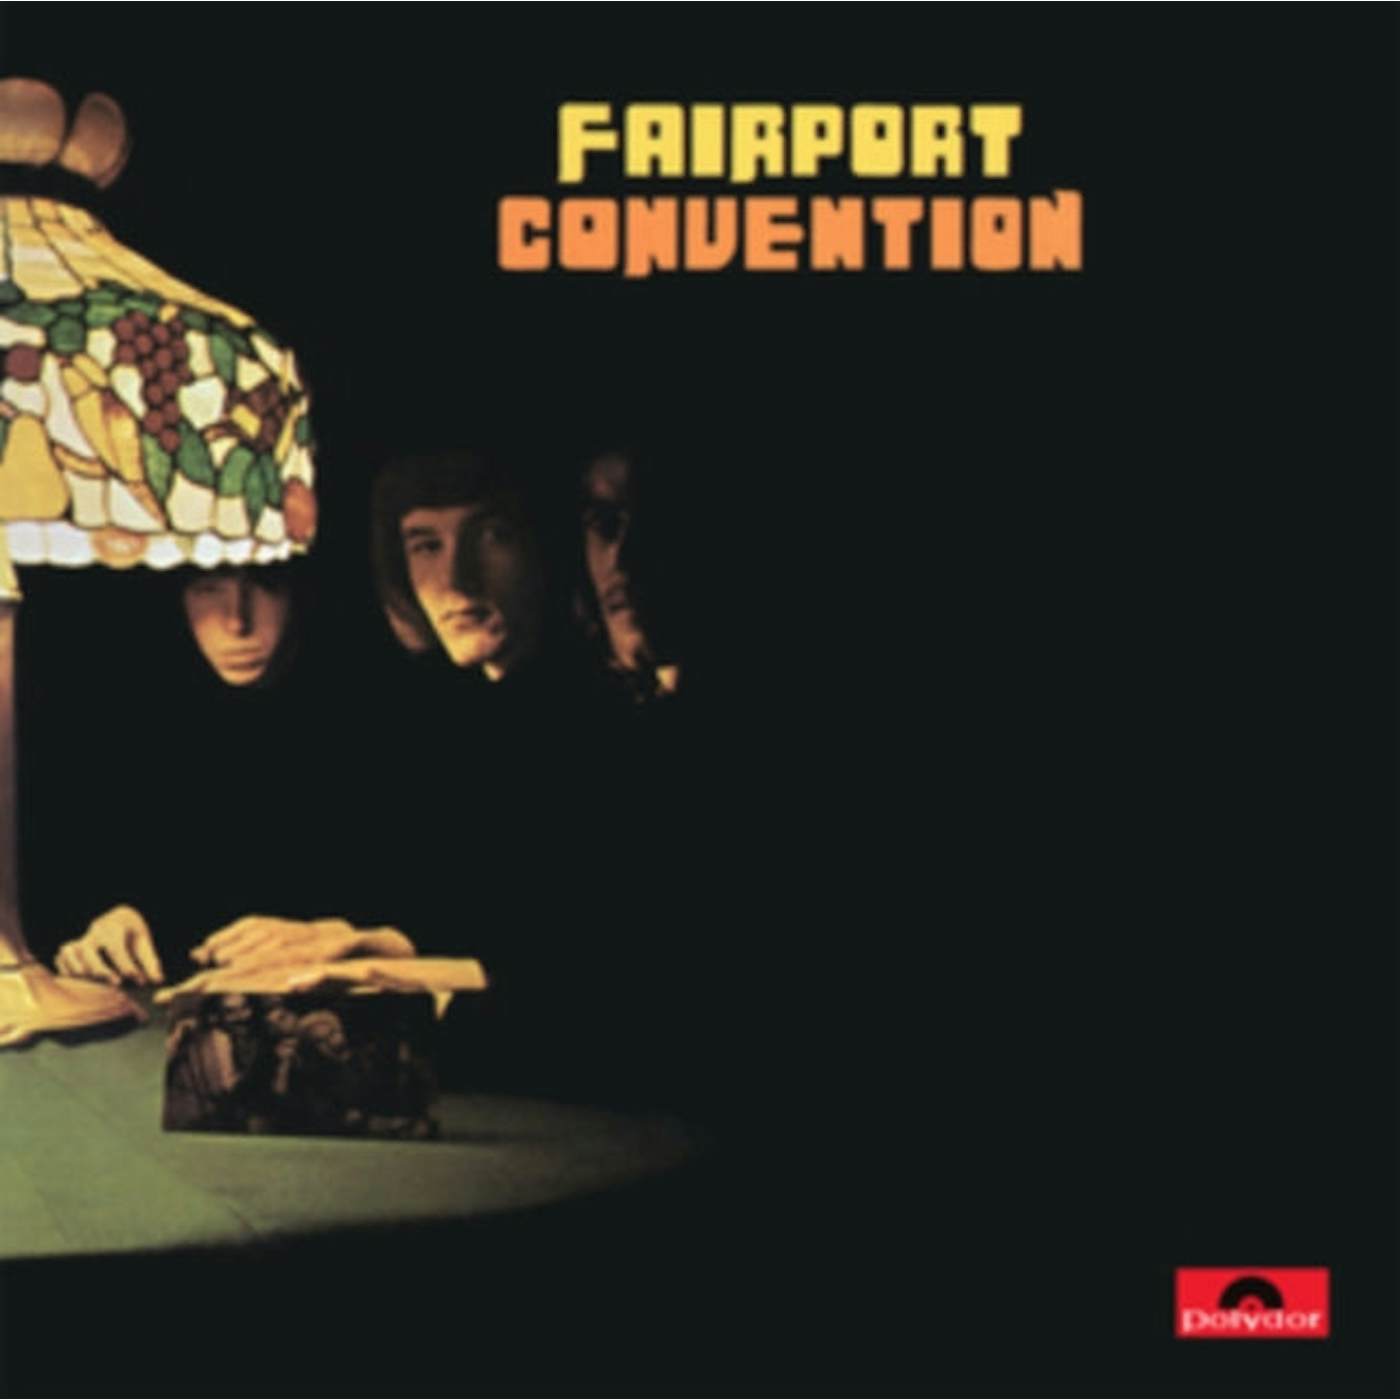 Fairport Convention LP - Fairport Convention (Vinyl)